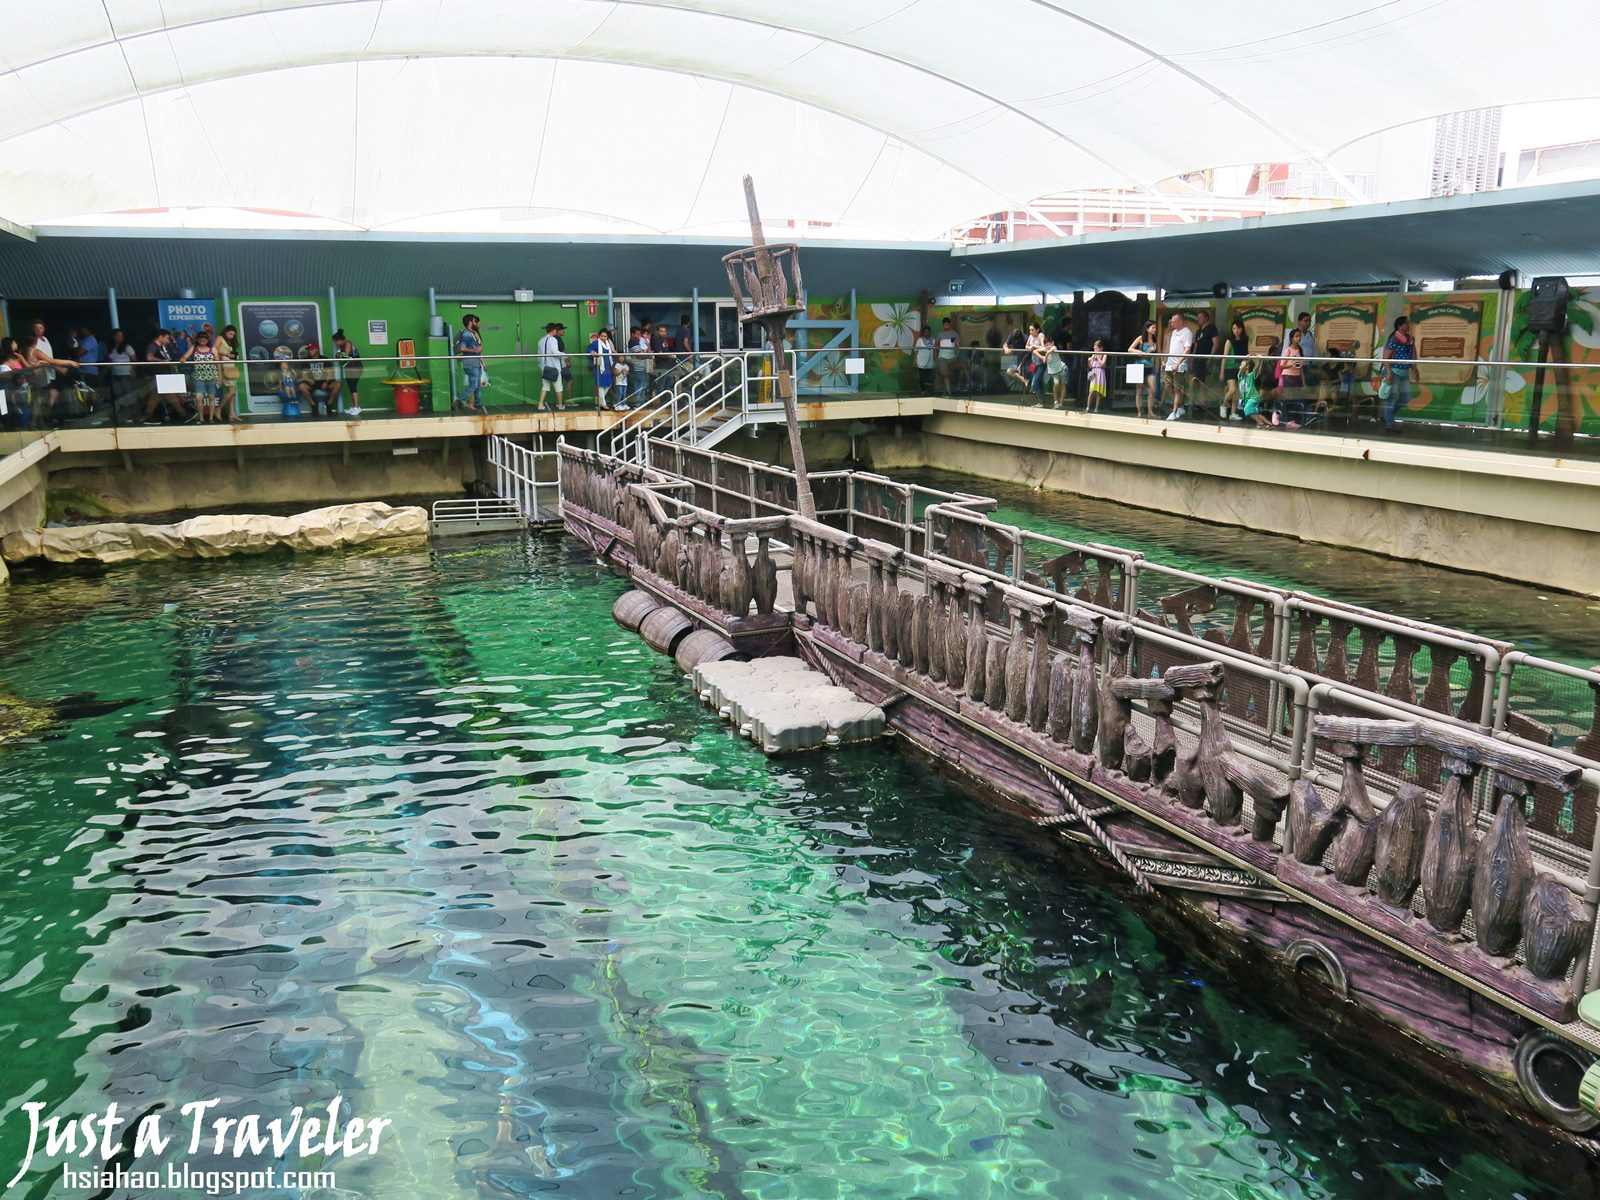 雪梨-景點-推薦-達令港-自由行-行程-旅遊-澳洲-雪梨海洋生物水族館-SEA LIFE Sydney Aquarium-Darling-Harbour-Tourist-Attraction-Travel